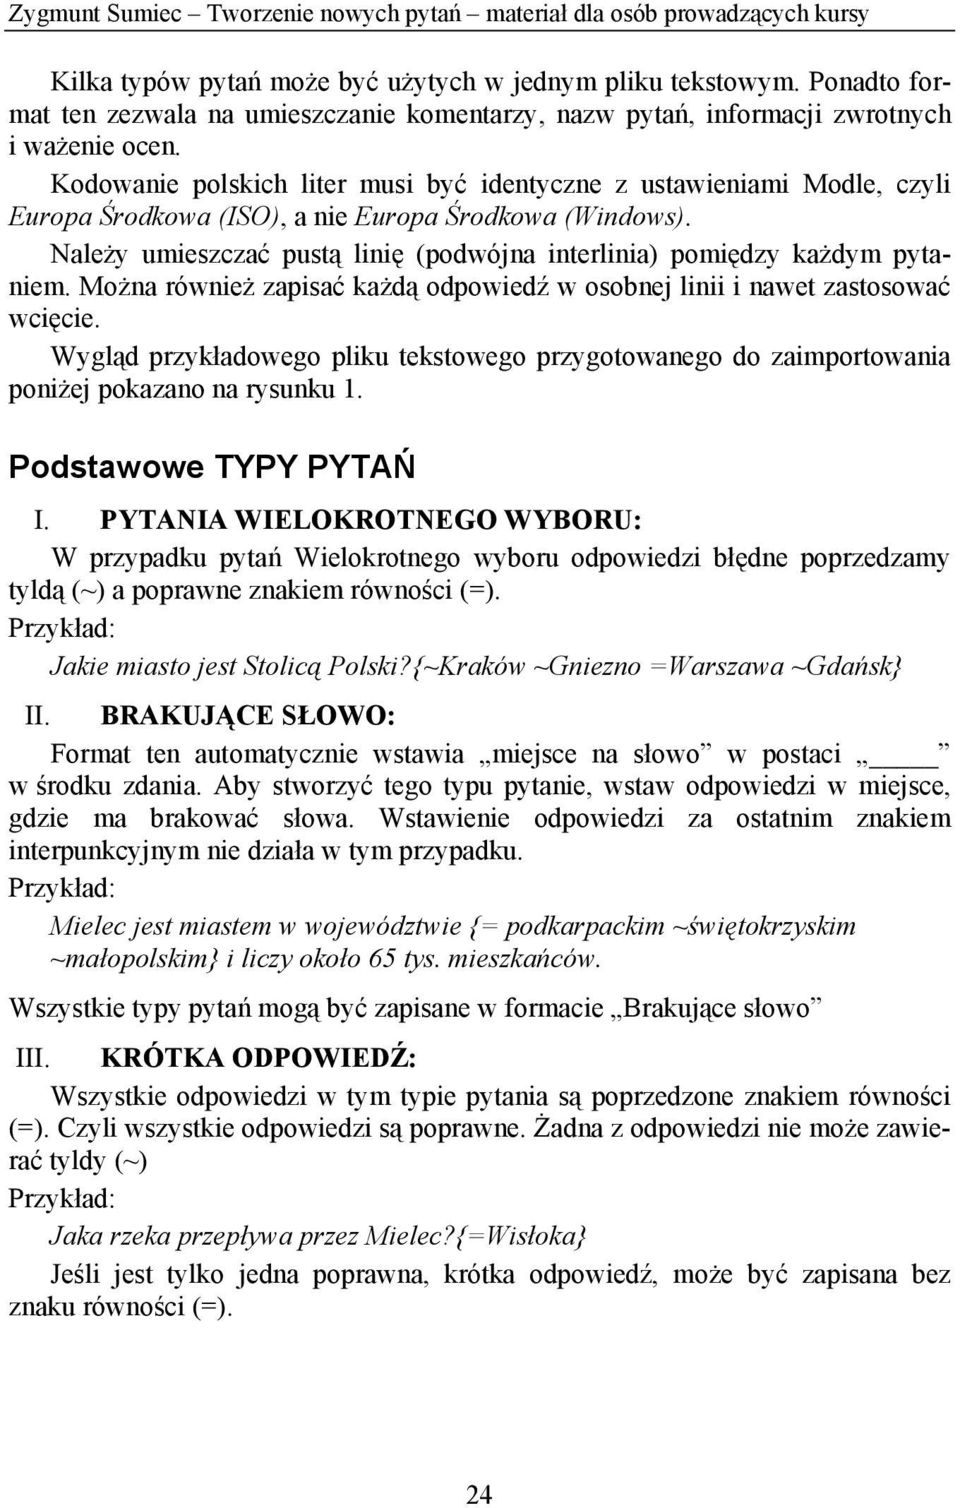 Kodowanie polskich liter musi być identyczne z ustawieniami Modle, czyli Europa Środkowa (ISO), a nie Europa Środkowa (Windows).